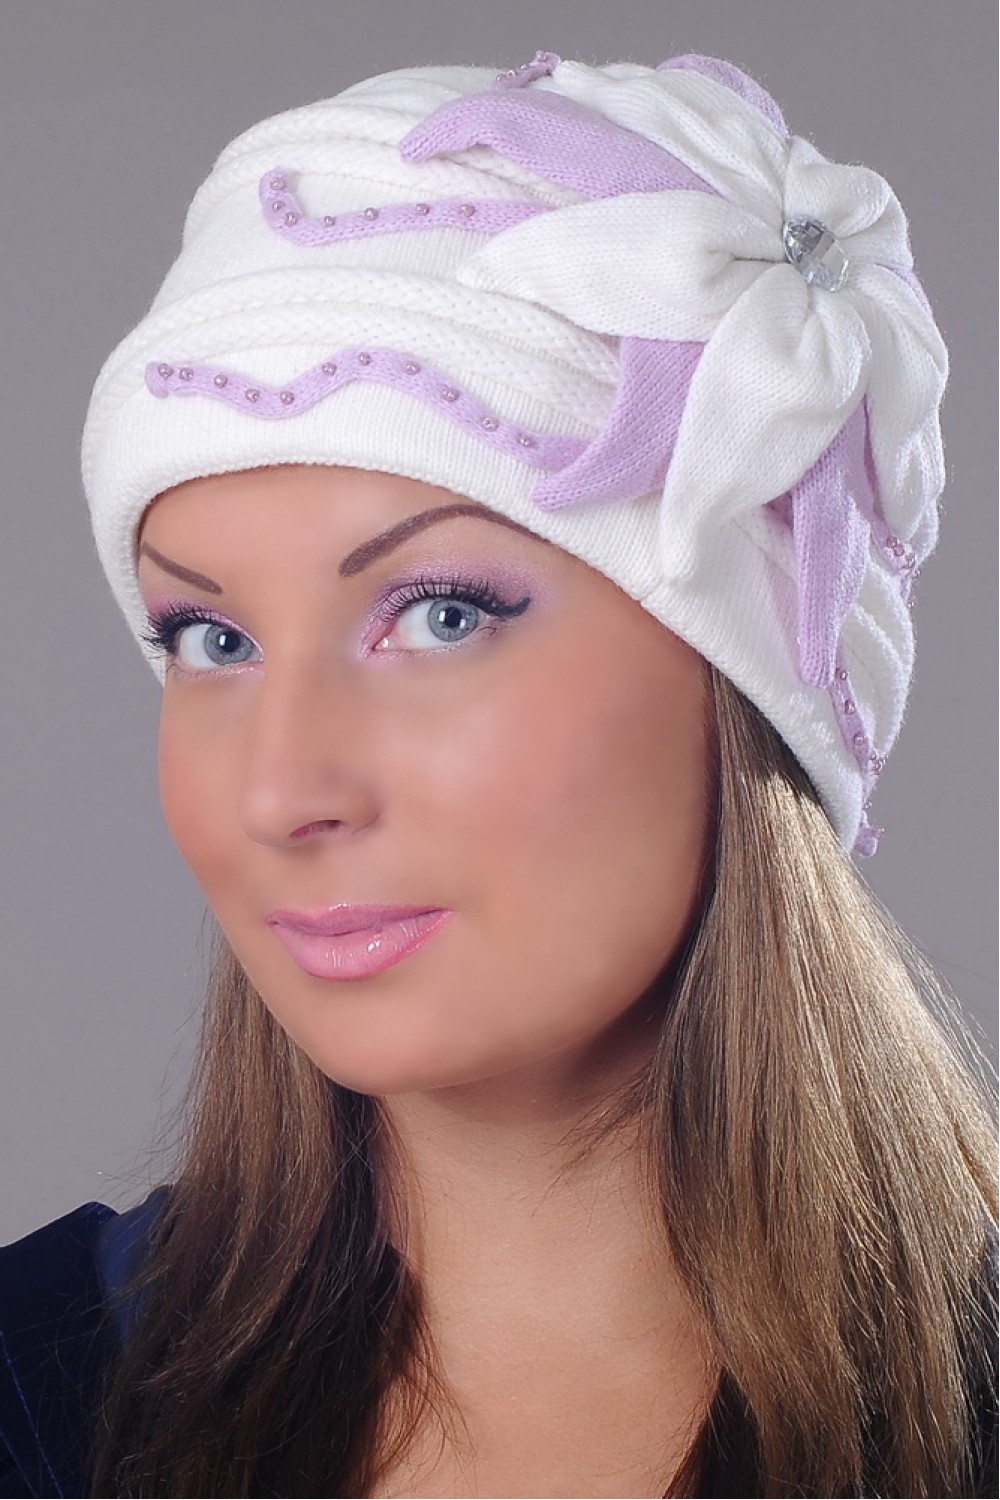 Своими руками женские шапки: головные уборы для мужчин и женщин из флиса